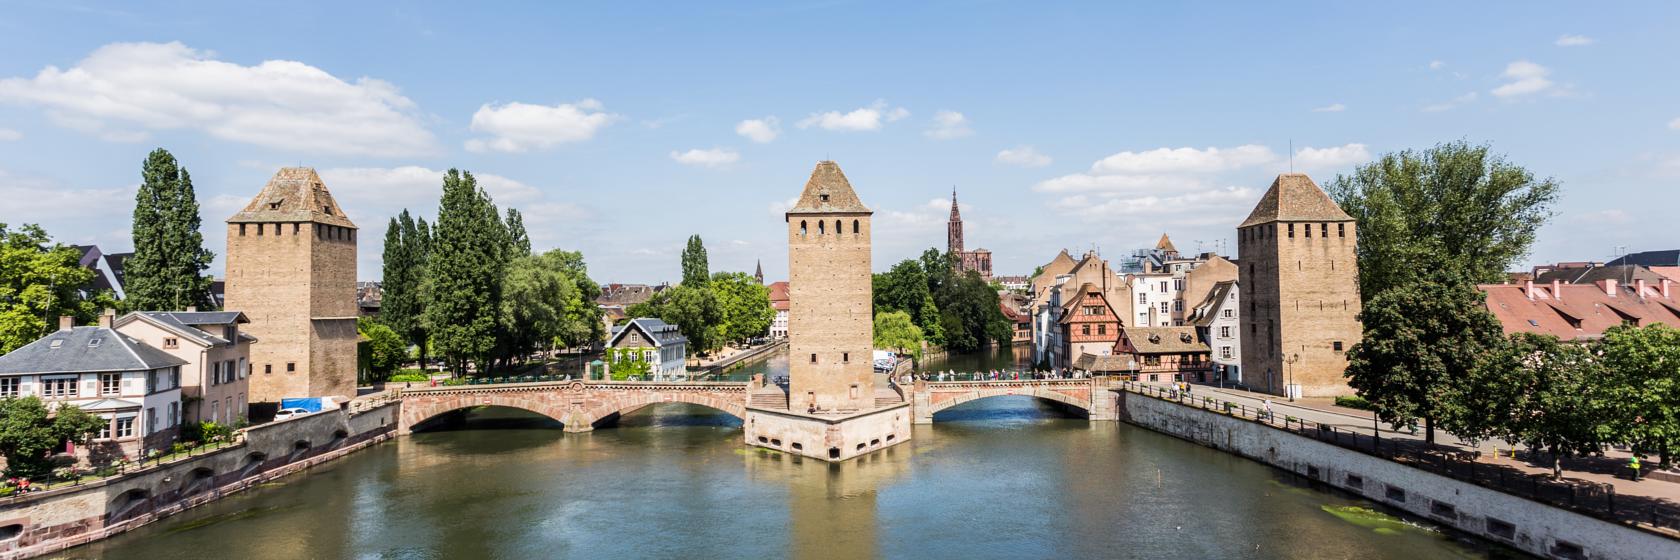 Strasbourg, Alsace, Northeast France